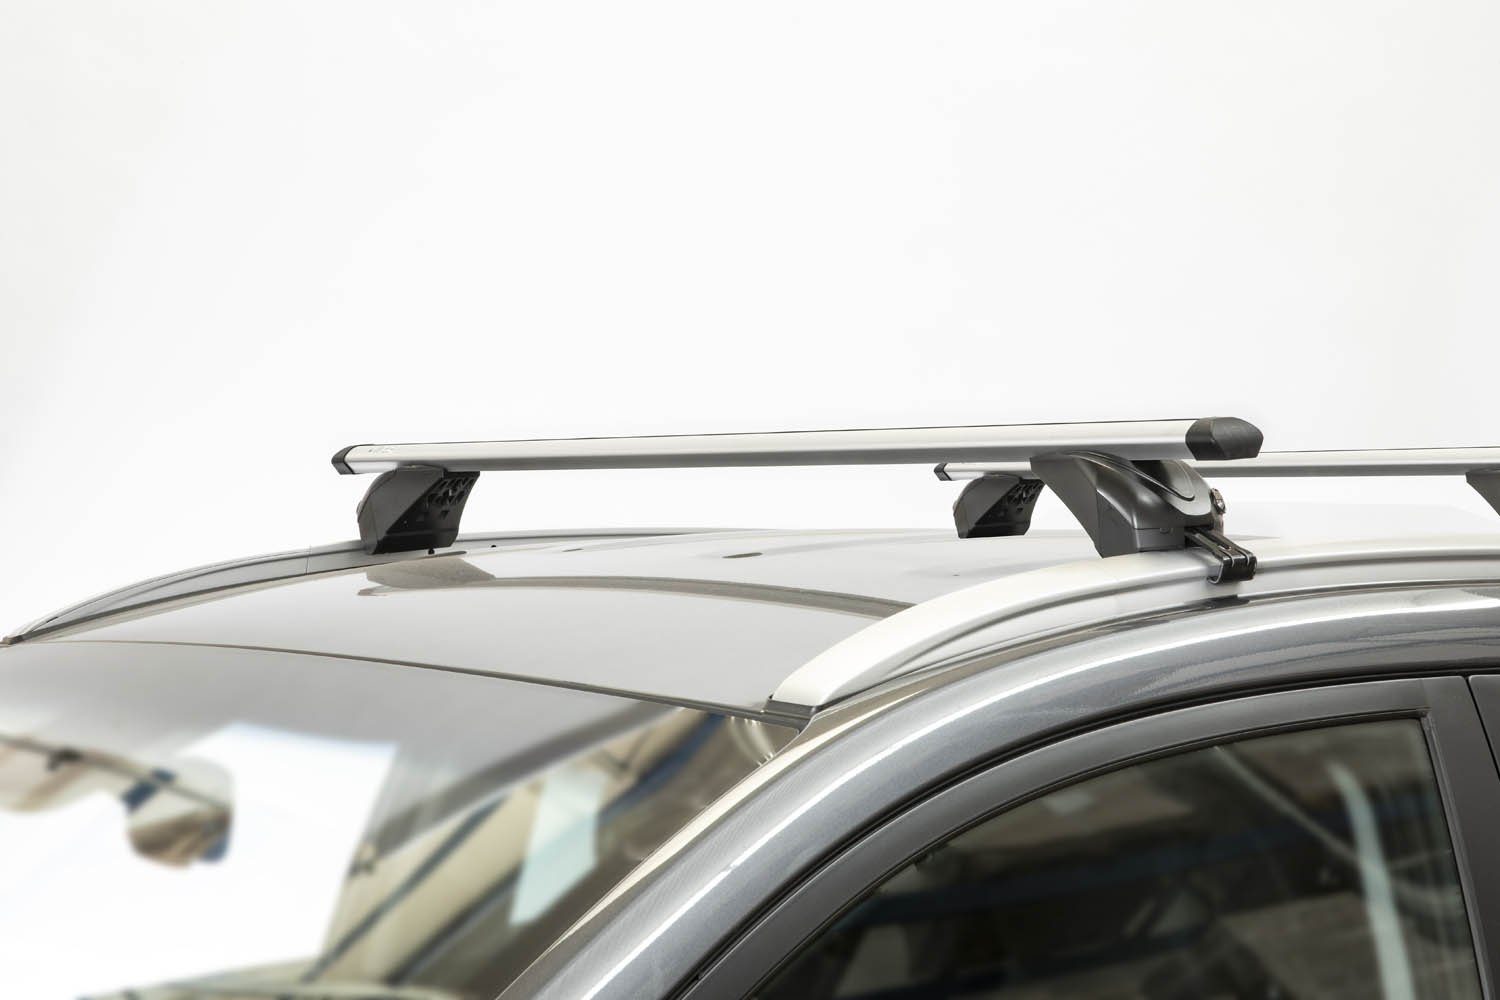 VDP Dachbox, (Für Ihren Opel (B) mit KING1 5-12 Dachträger/Relingträger Vauxhall VDPJUXT600 Opel Vauxhall Türer) (B) im 5-12, Dachträger (5 Zafira + / abschließbar Türer) VDP / Dachbox (5 600Ltr und Zafira Set), Dachbox kompatibel